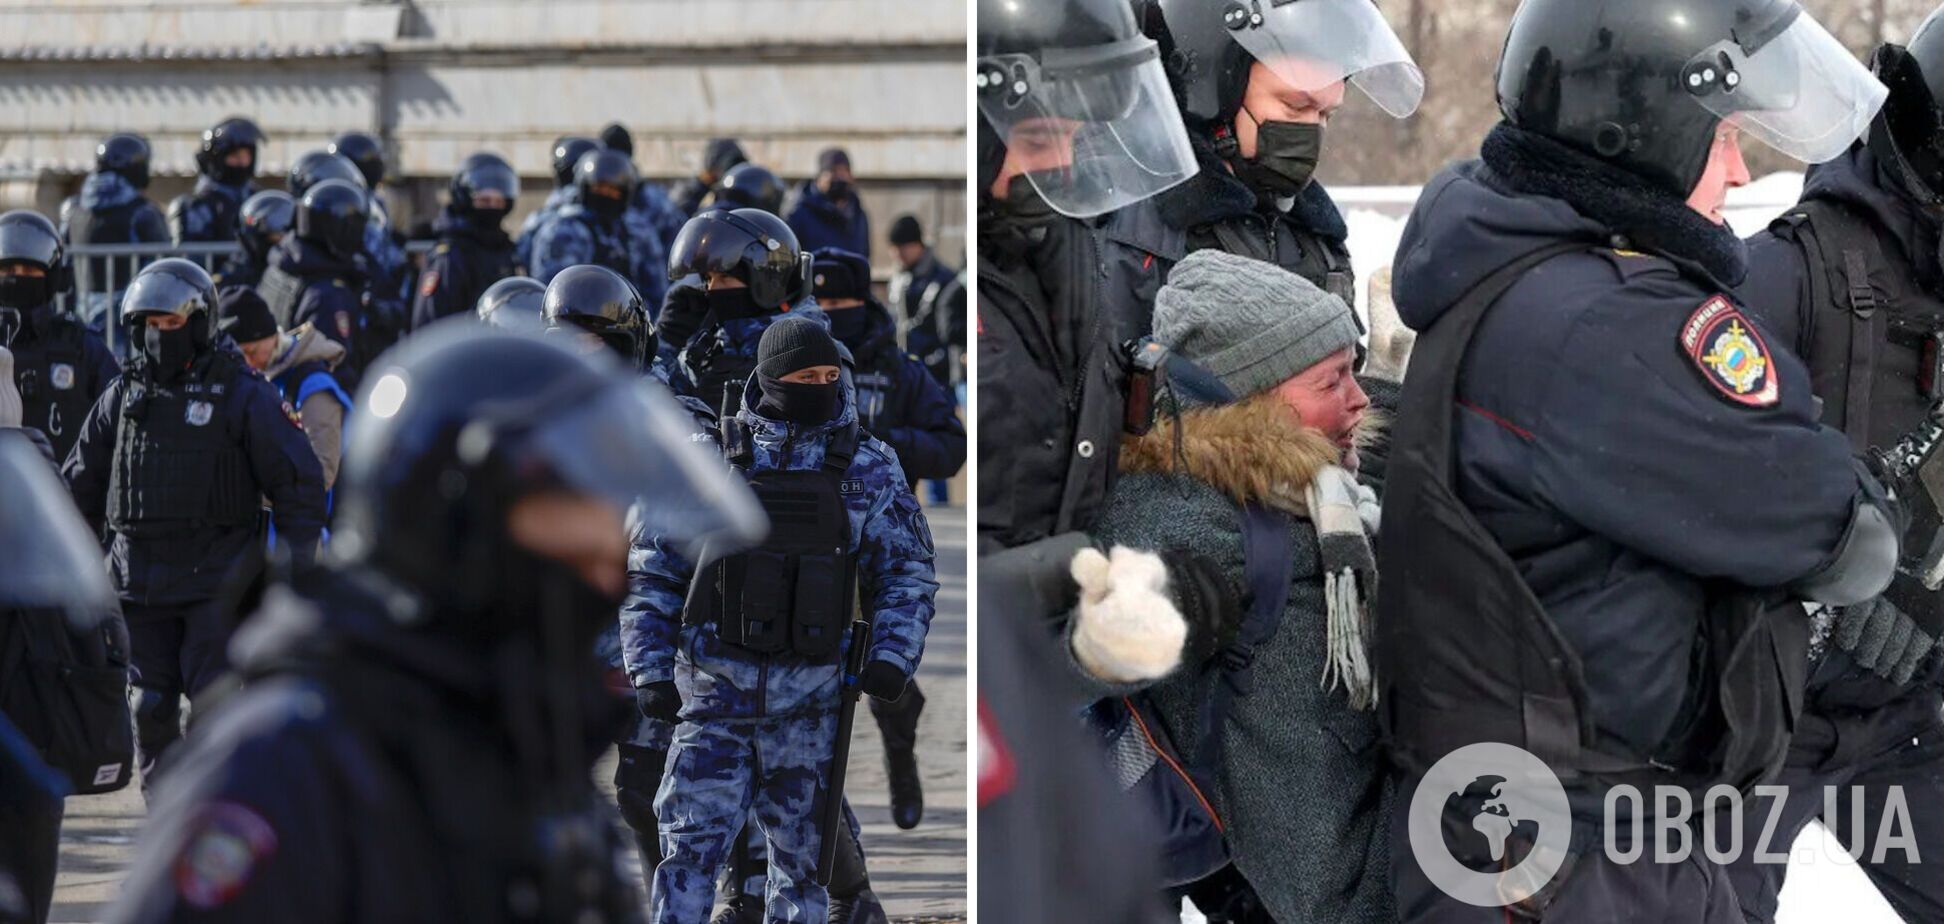 'Вы враги народа': появилась запись допроса и избиения российскими силовиками задержанной на протестах девушки. Аудио